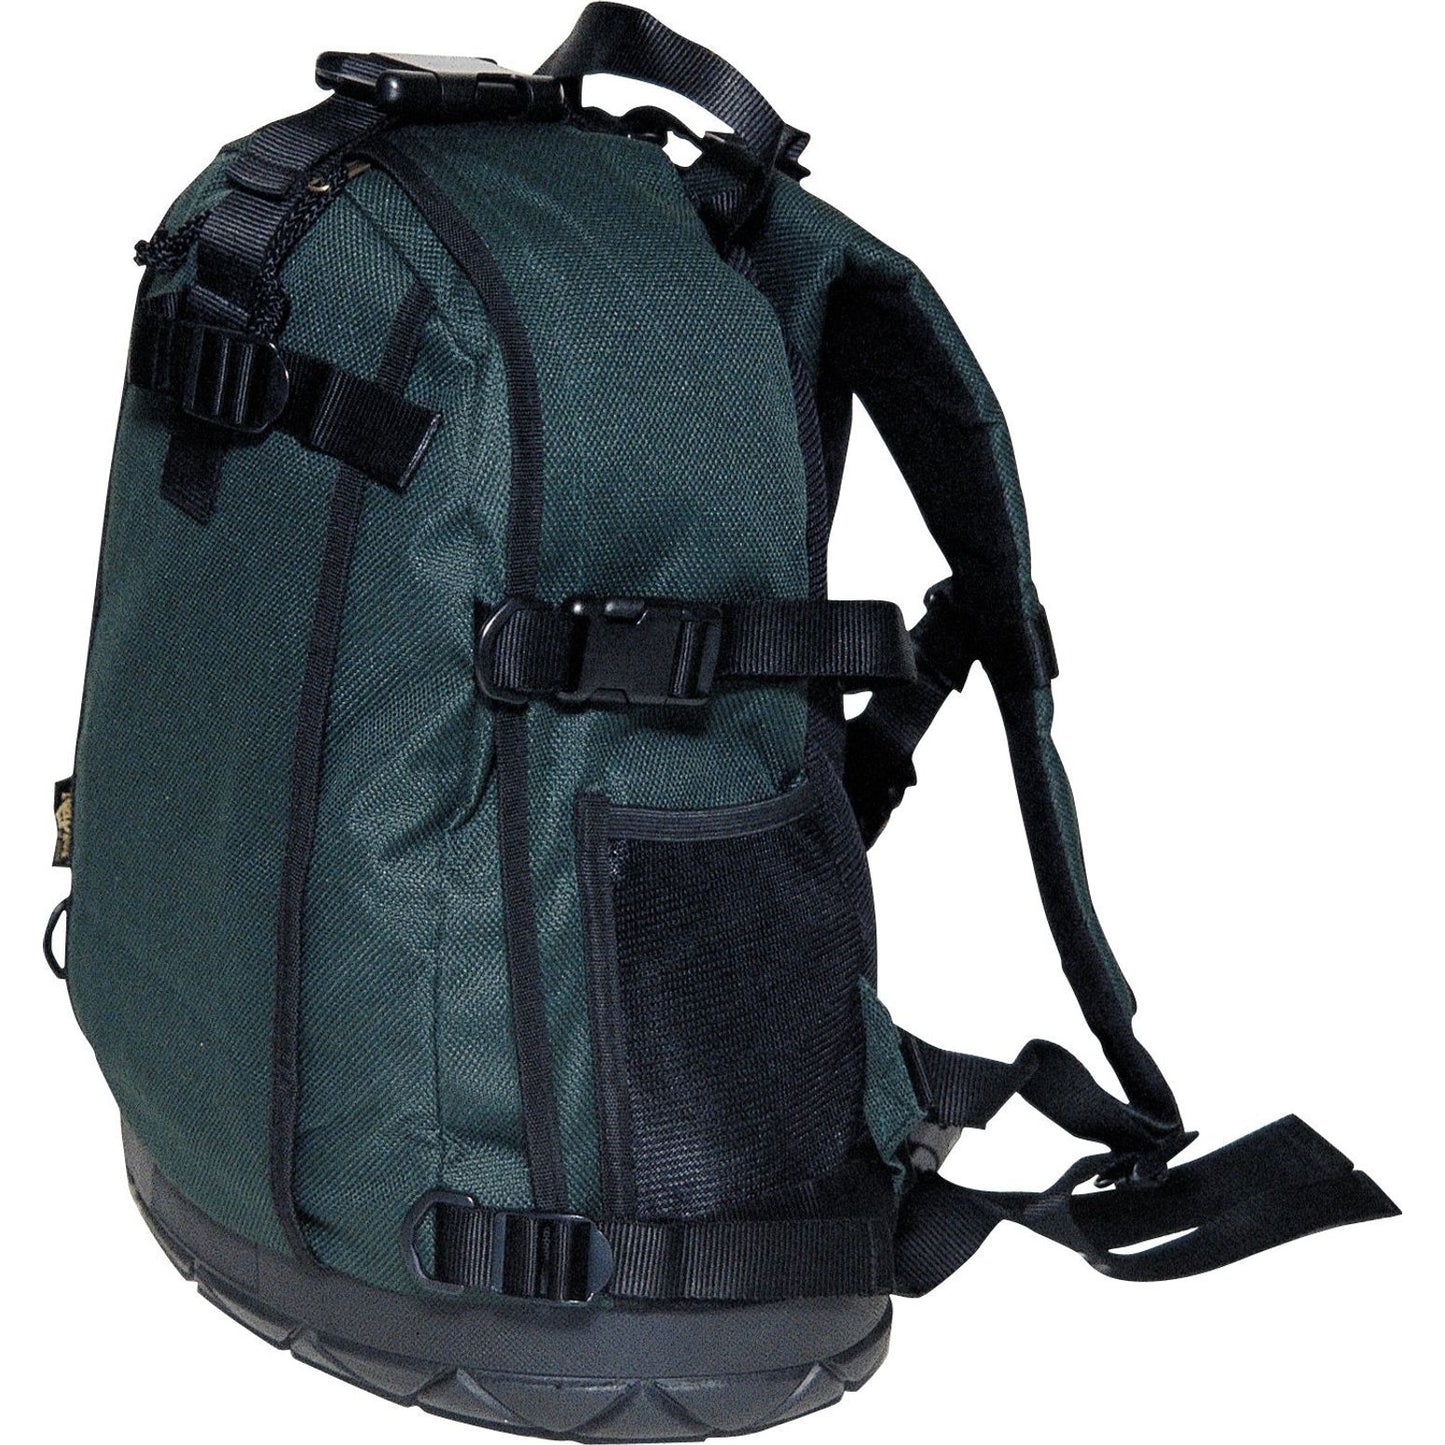 Ranger 1 Backpack